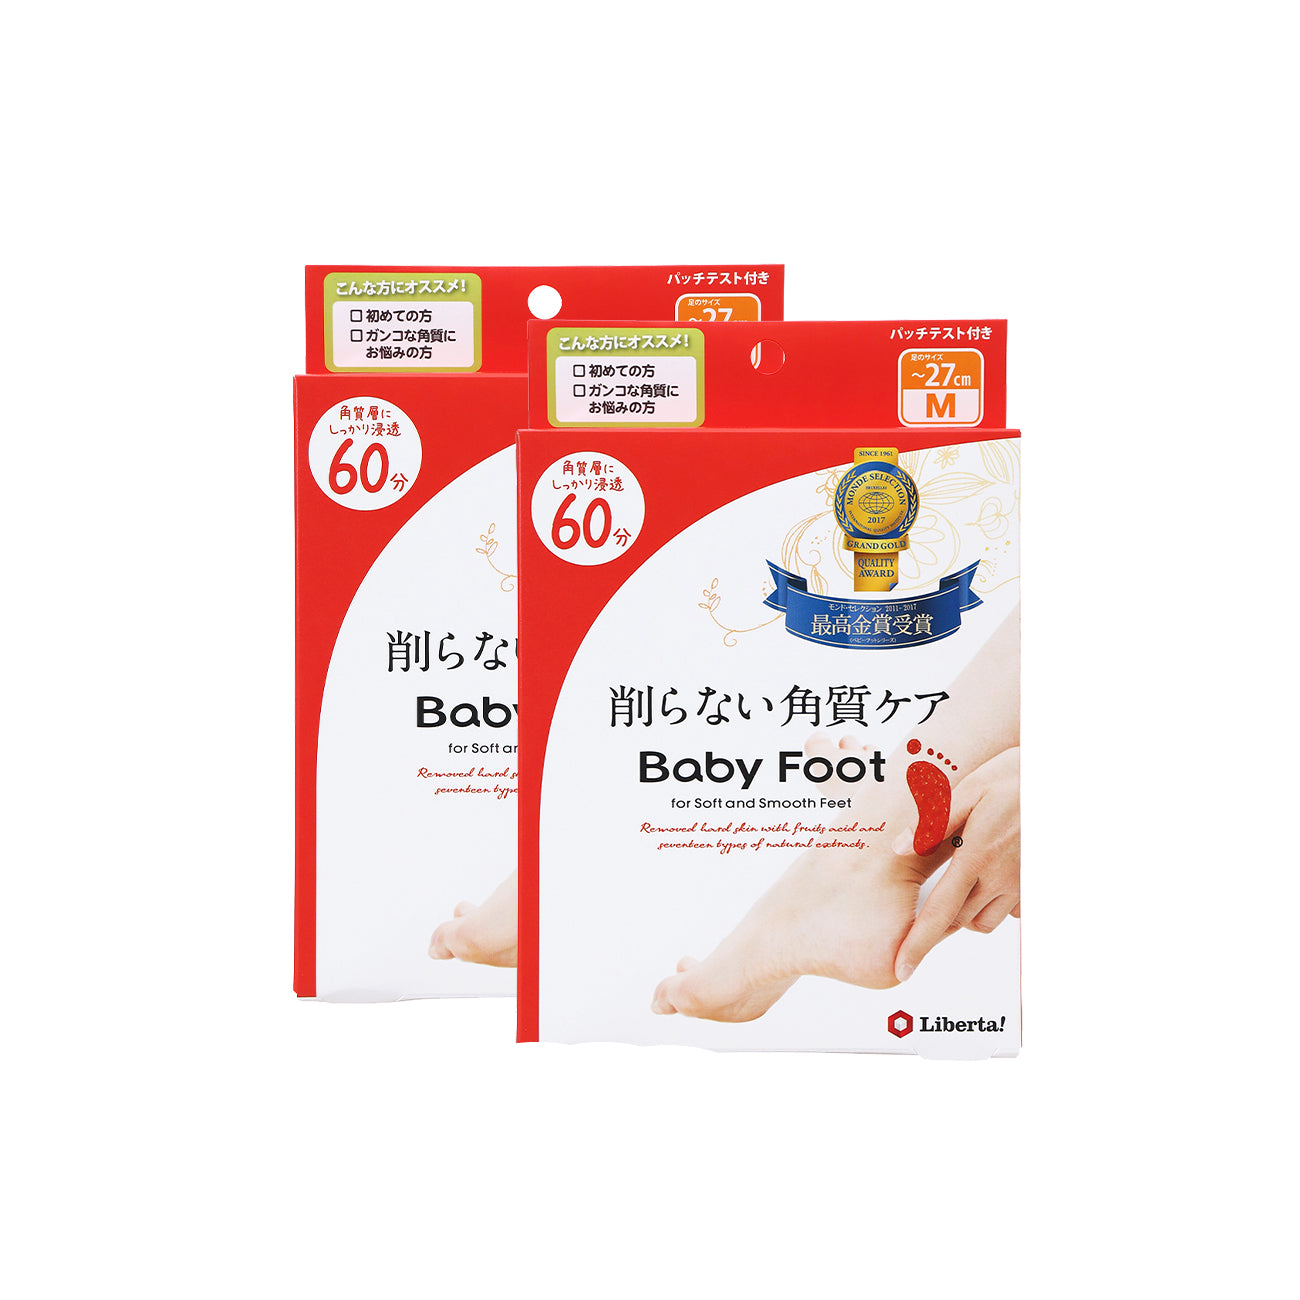 Baby Foot Deep Skin Foot Pack (M) 2 Pack Beauty Baby Foot   